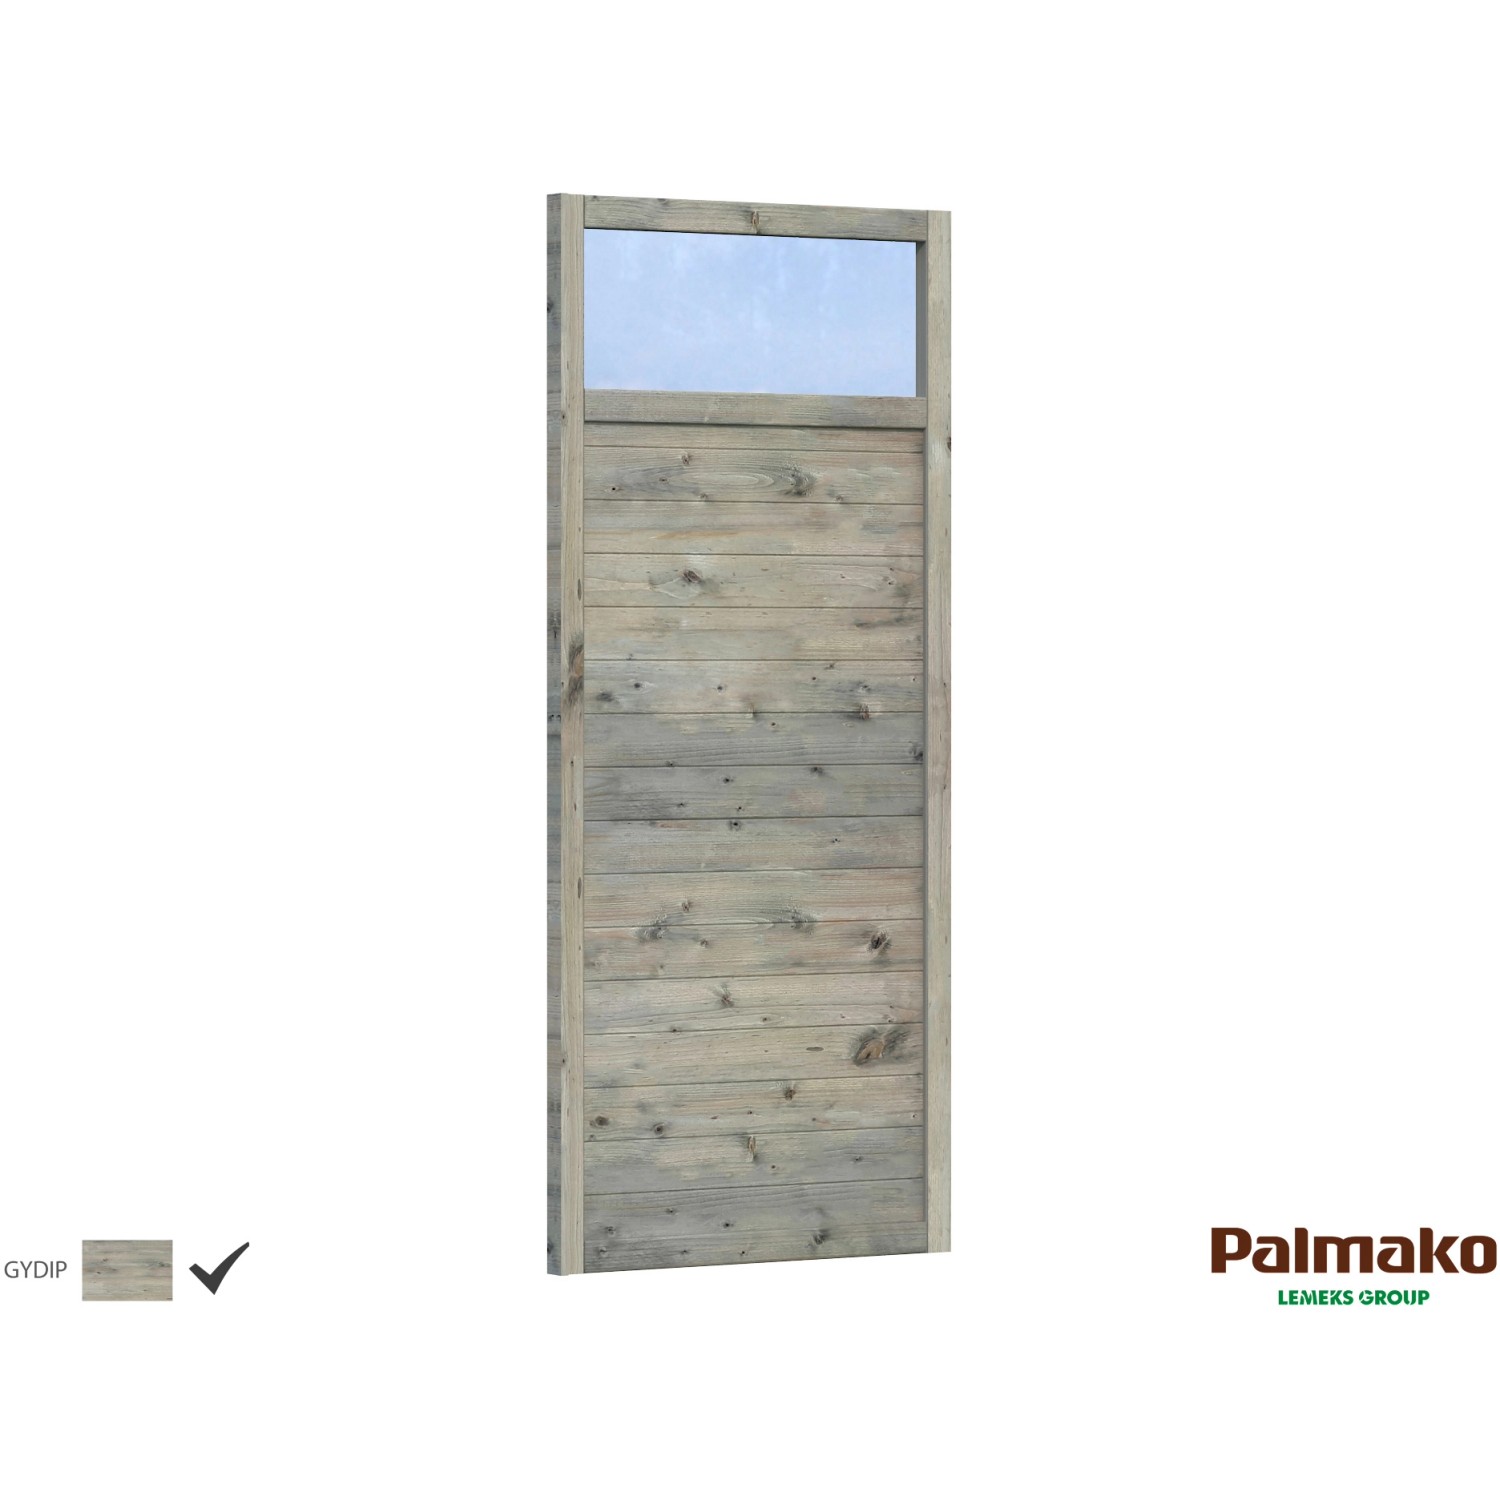 Palmako Holzelement für Holz-Pavillon Lucy Grau tauchgrundiert 103 cm x 230 cm von Palmako